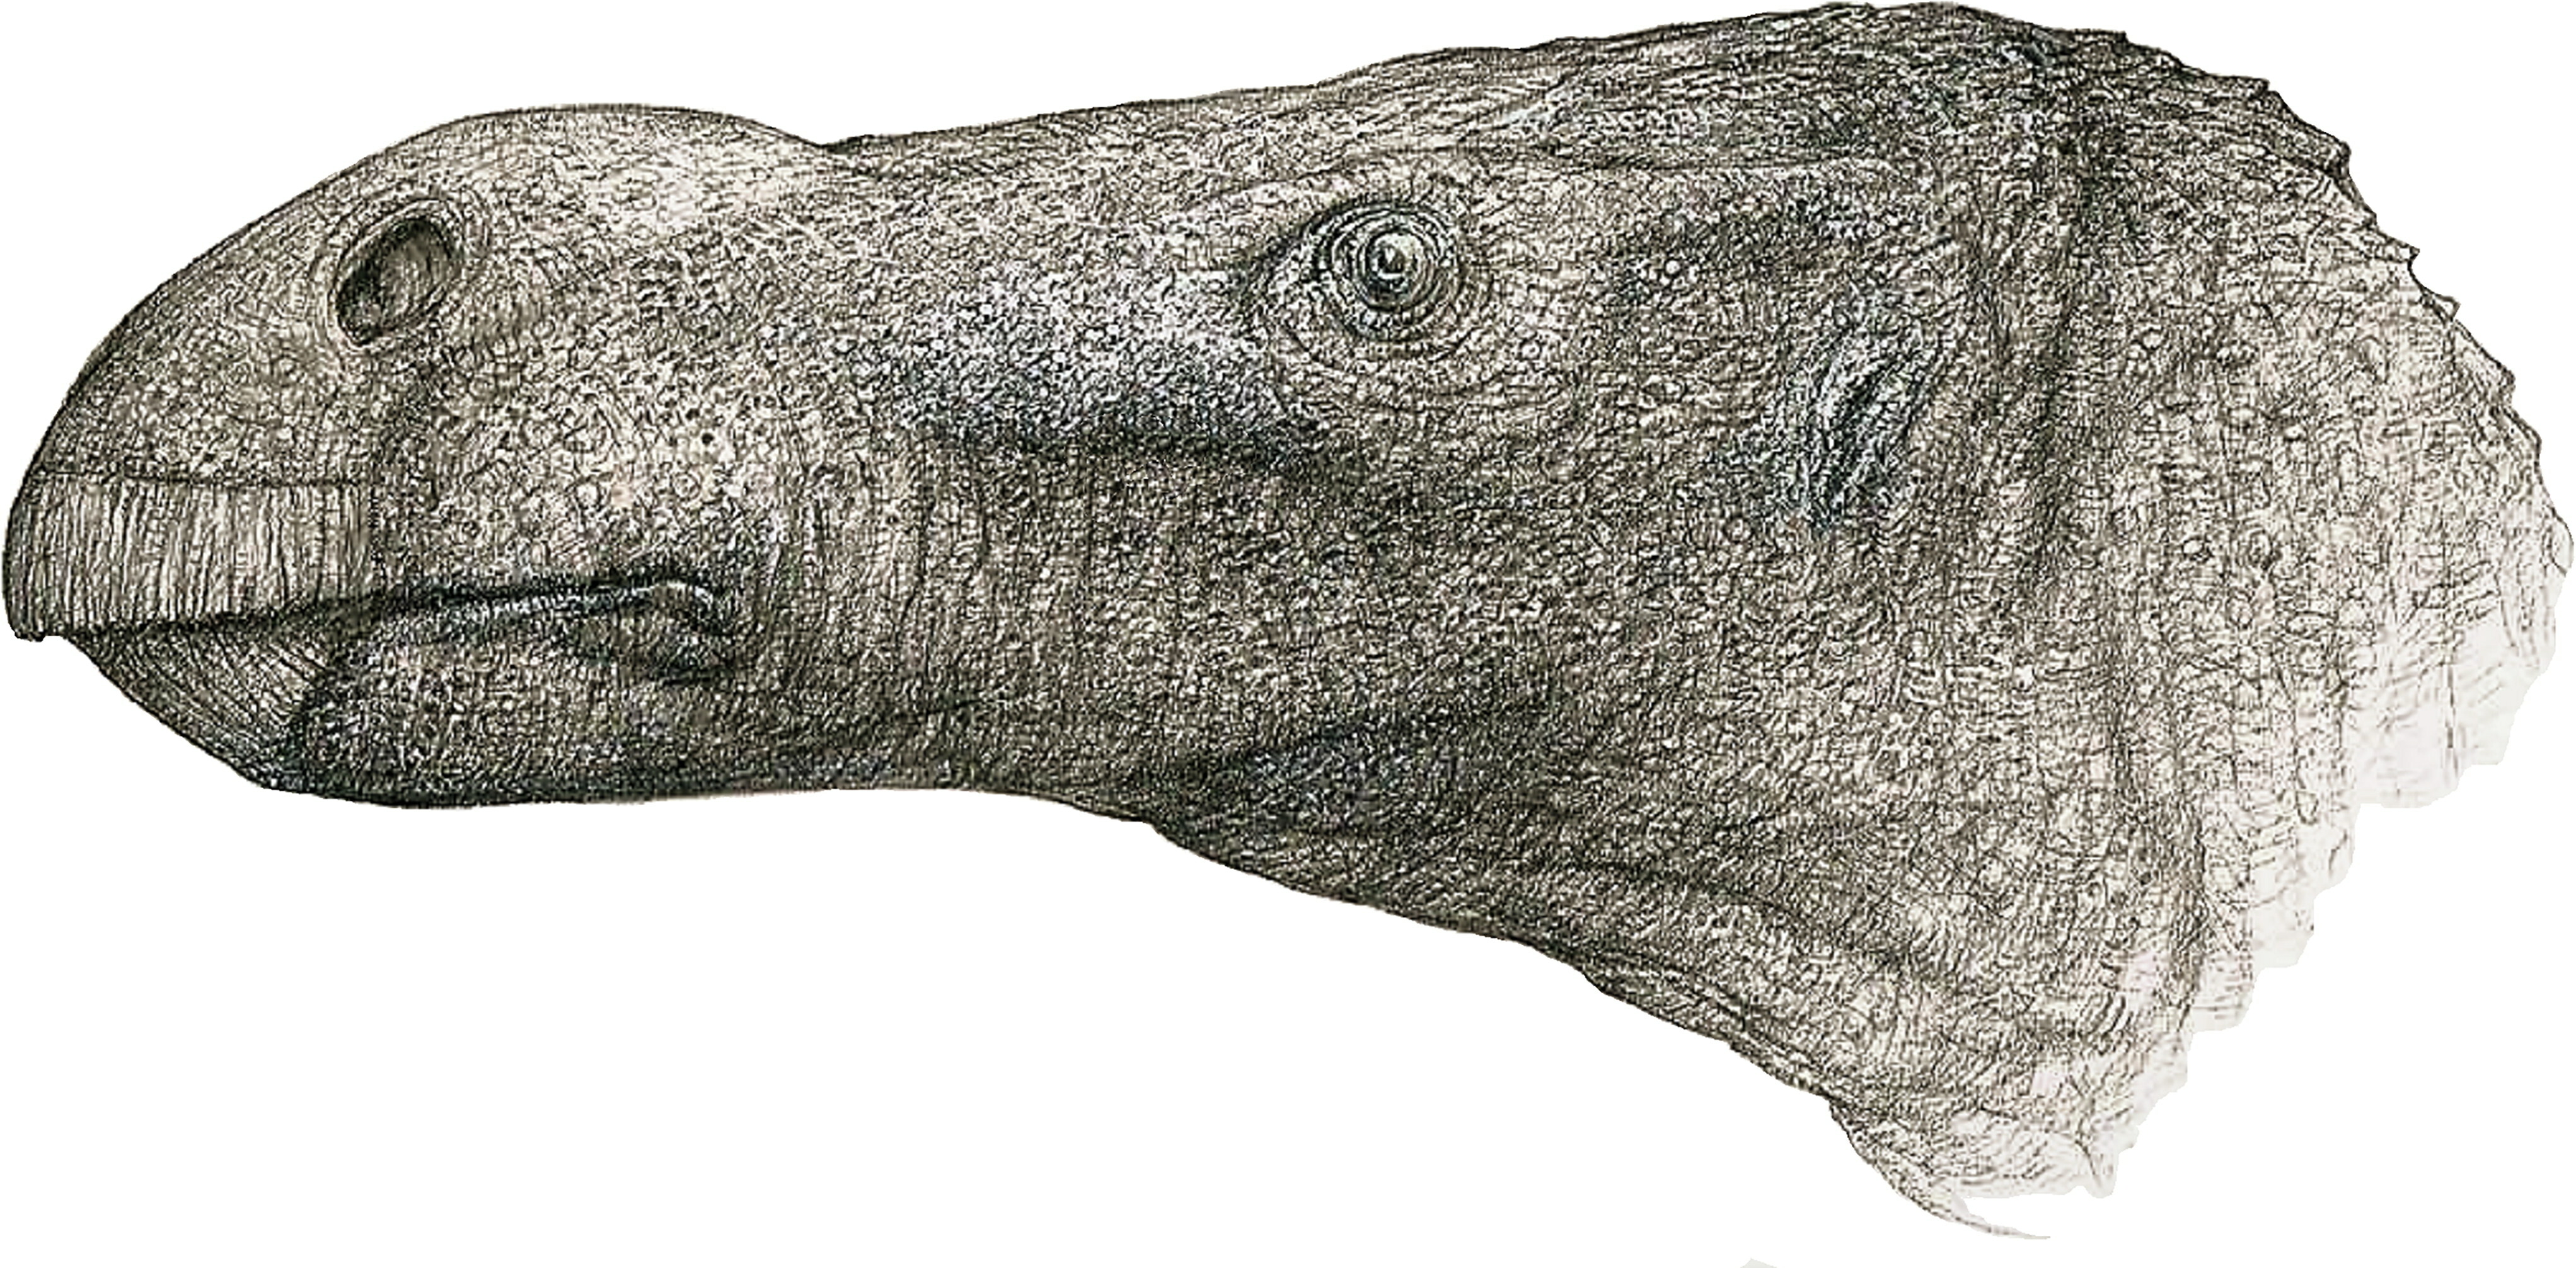 Új dinoszauruszfajt fedeztek fel egy brit múzeumi pincében